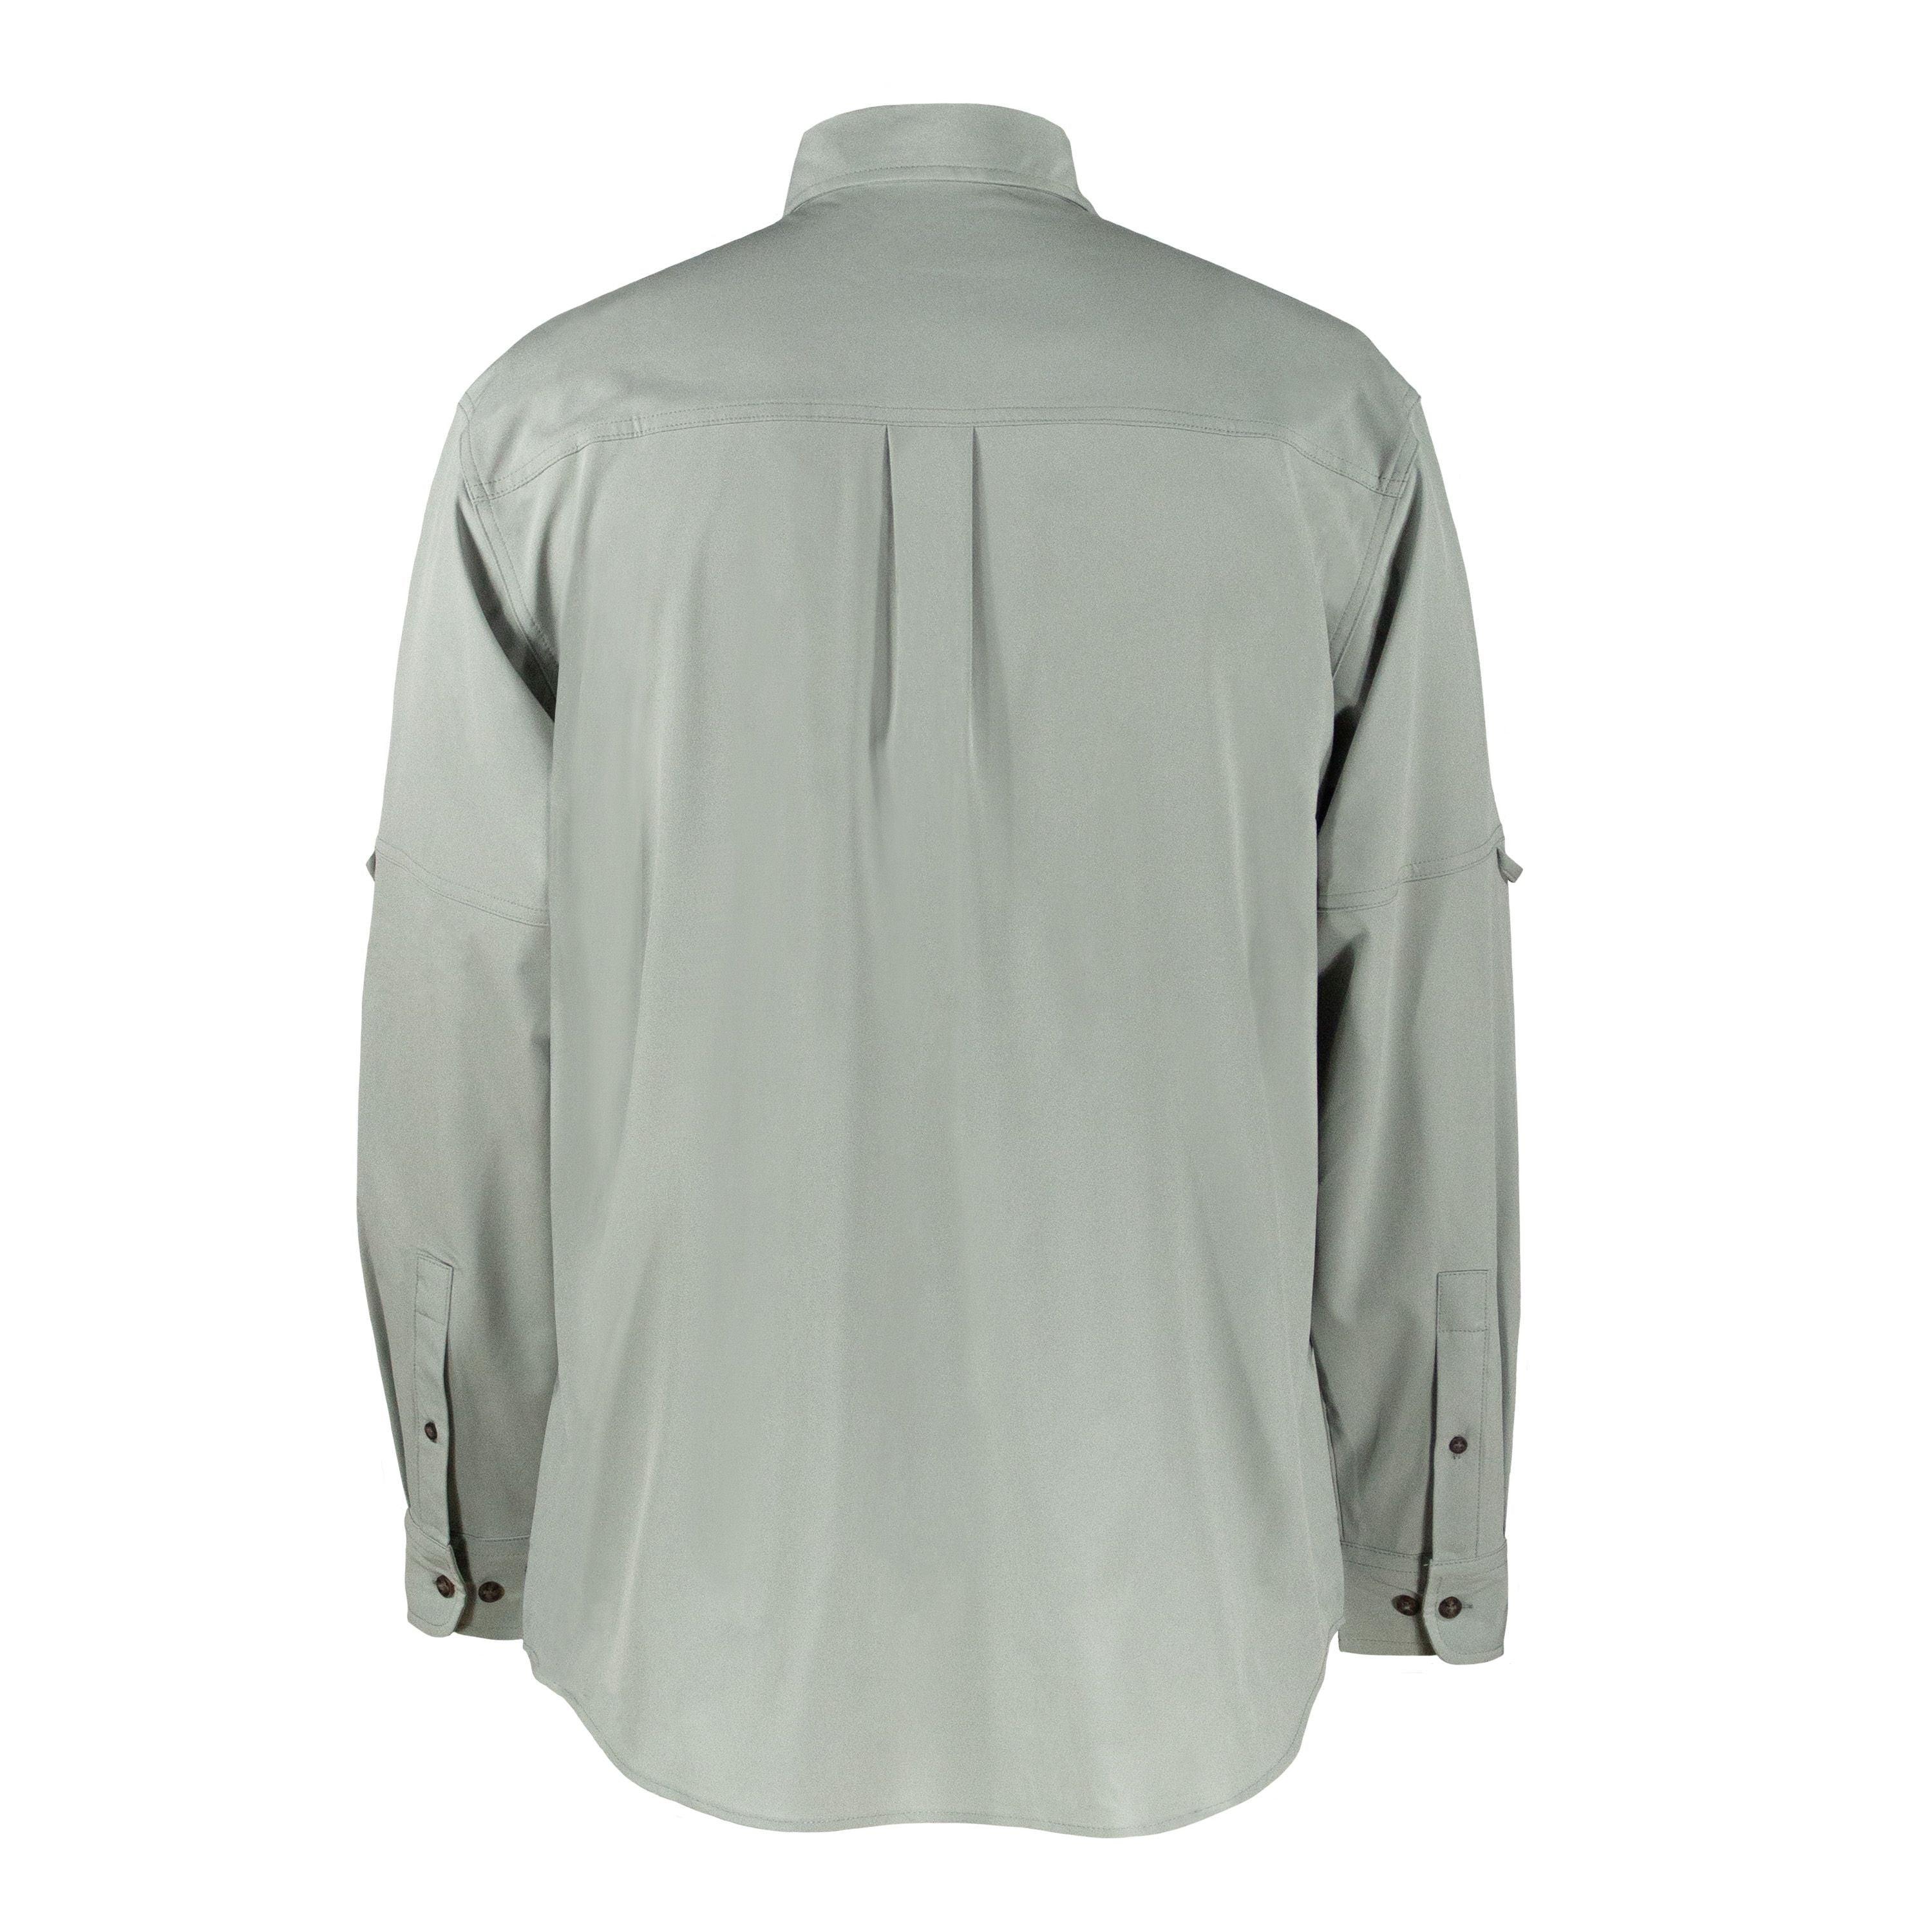 Chemise à séchage rapide - Homme||Quick dry shirt - Men's